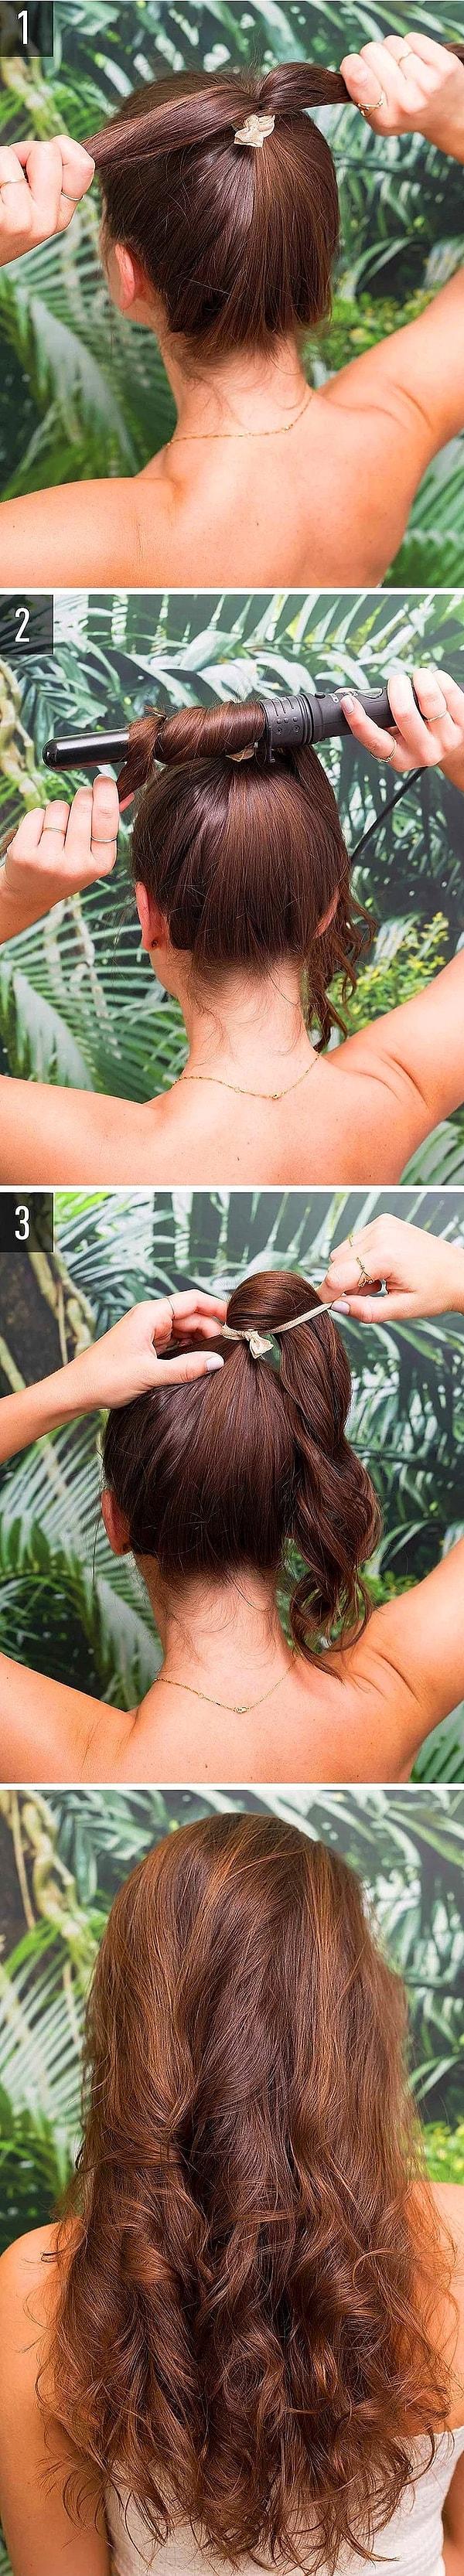 9. Saçlarınıza doğal dalgalar yapmanın bir diğer yolu!